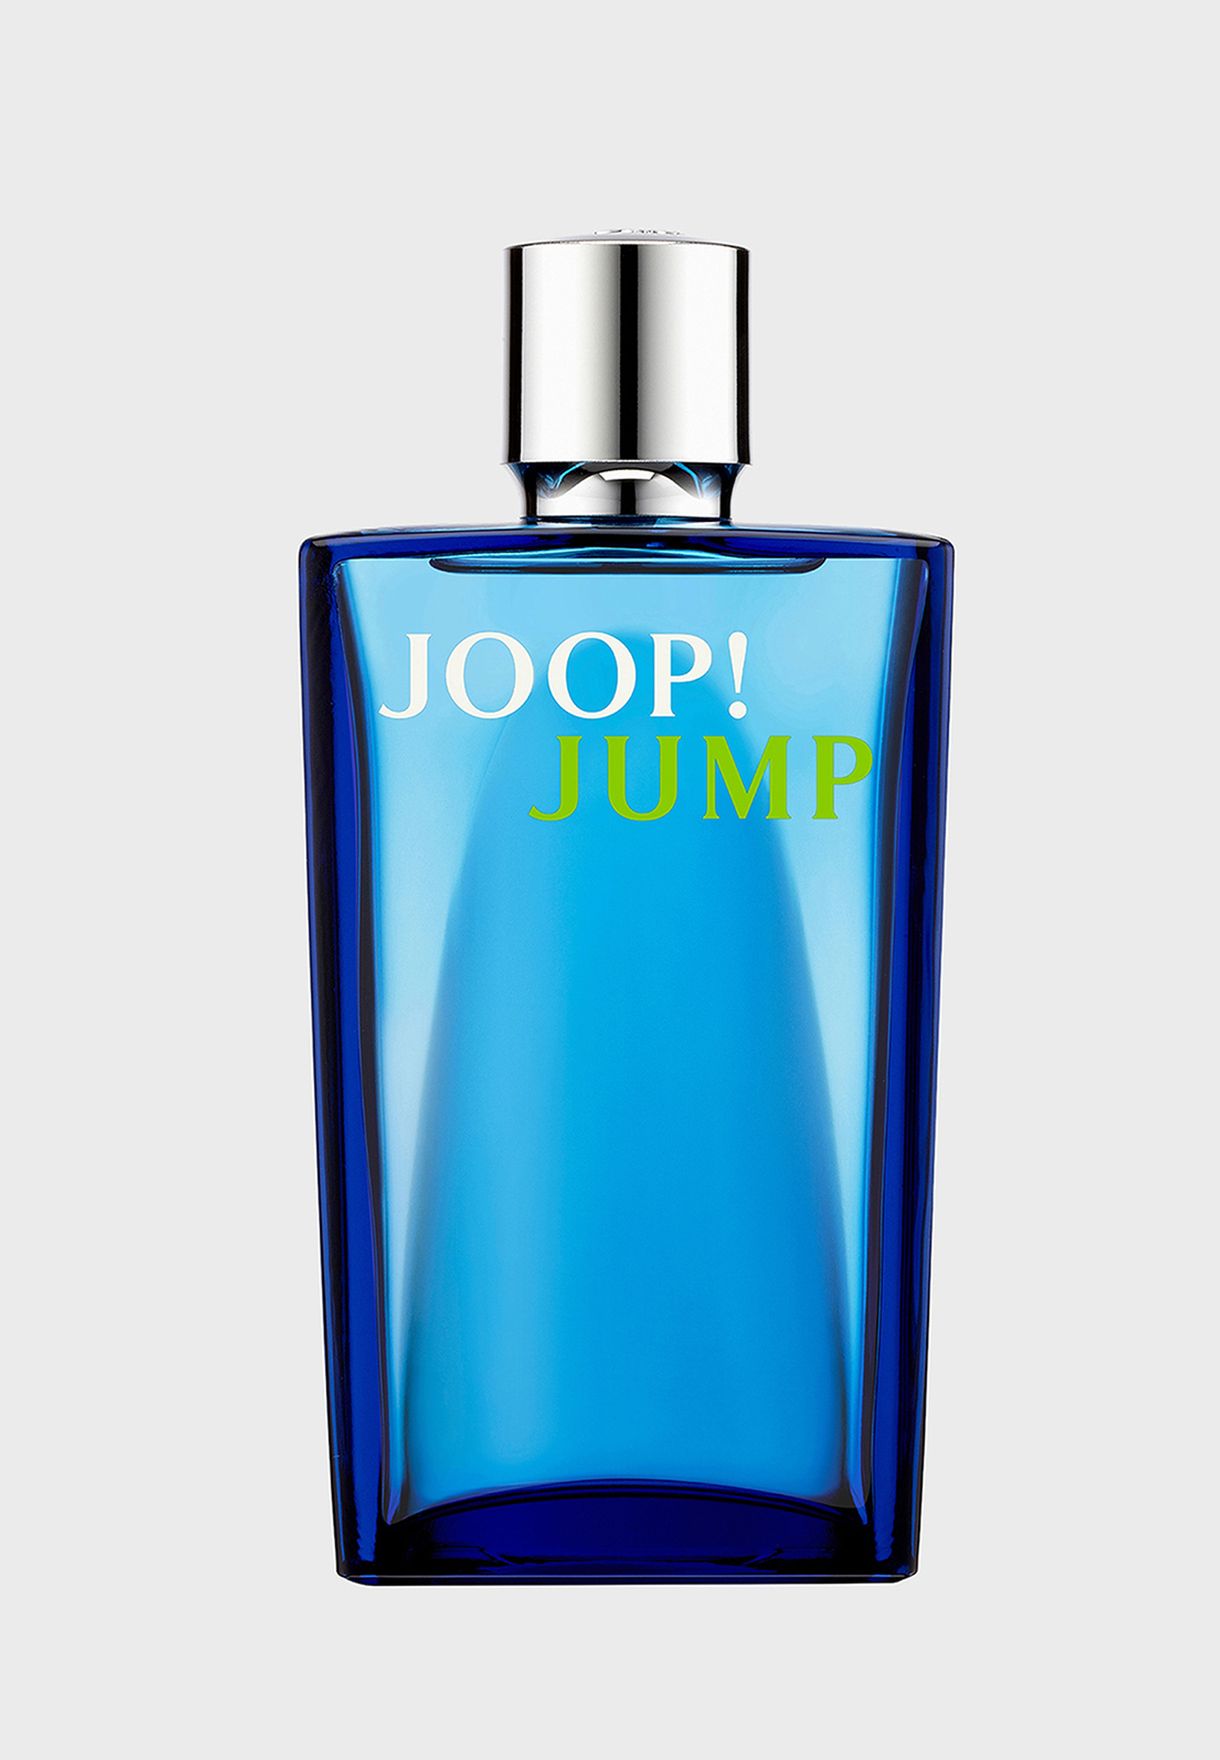 Jump Joop! Eau de Toilette, 100 ml